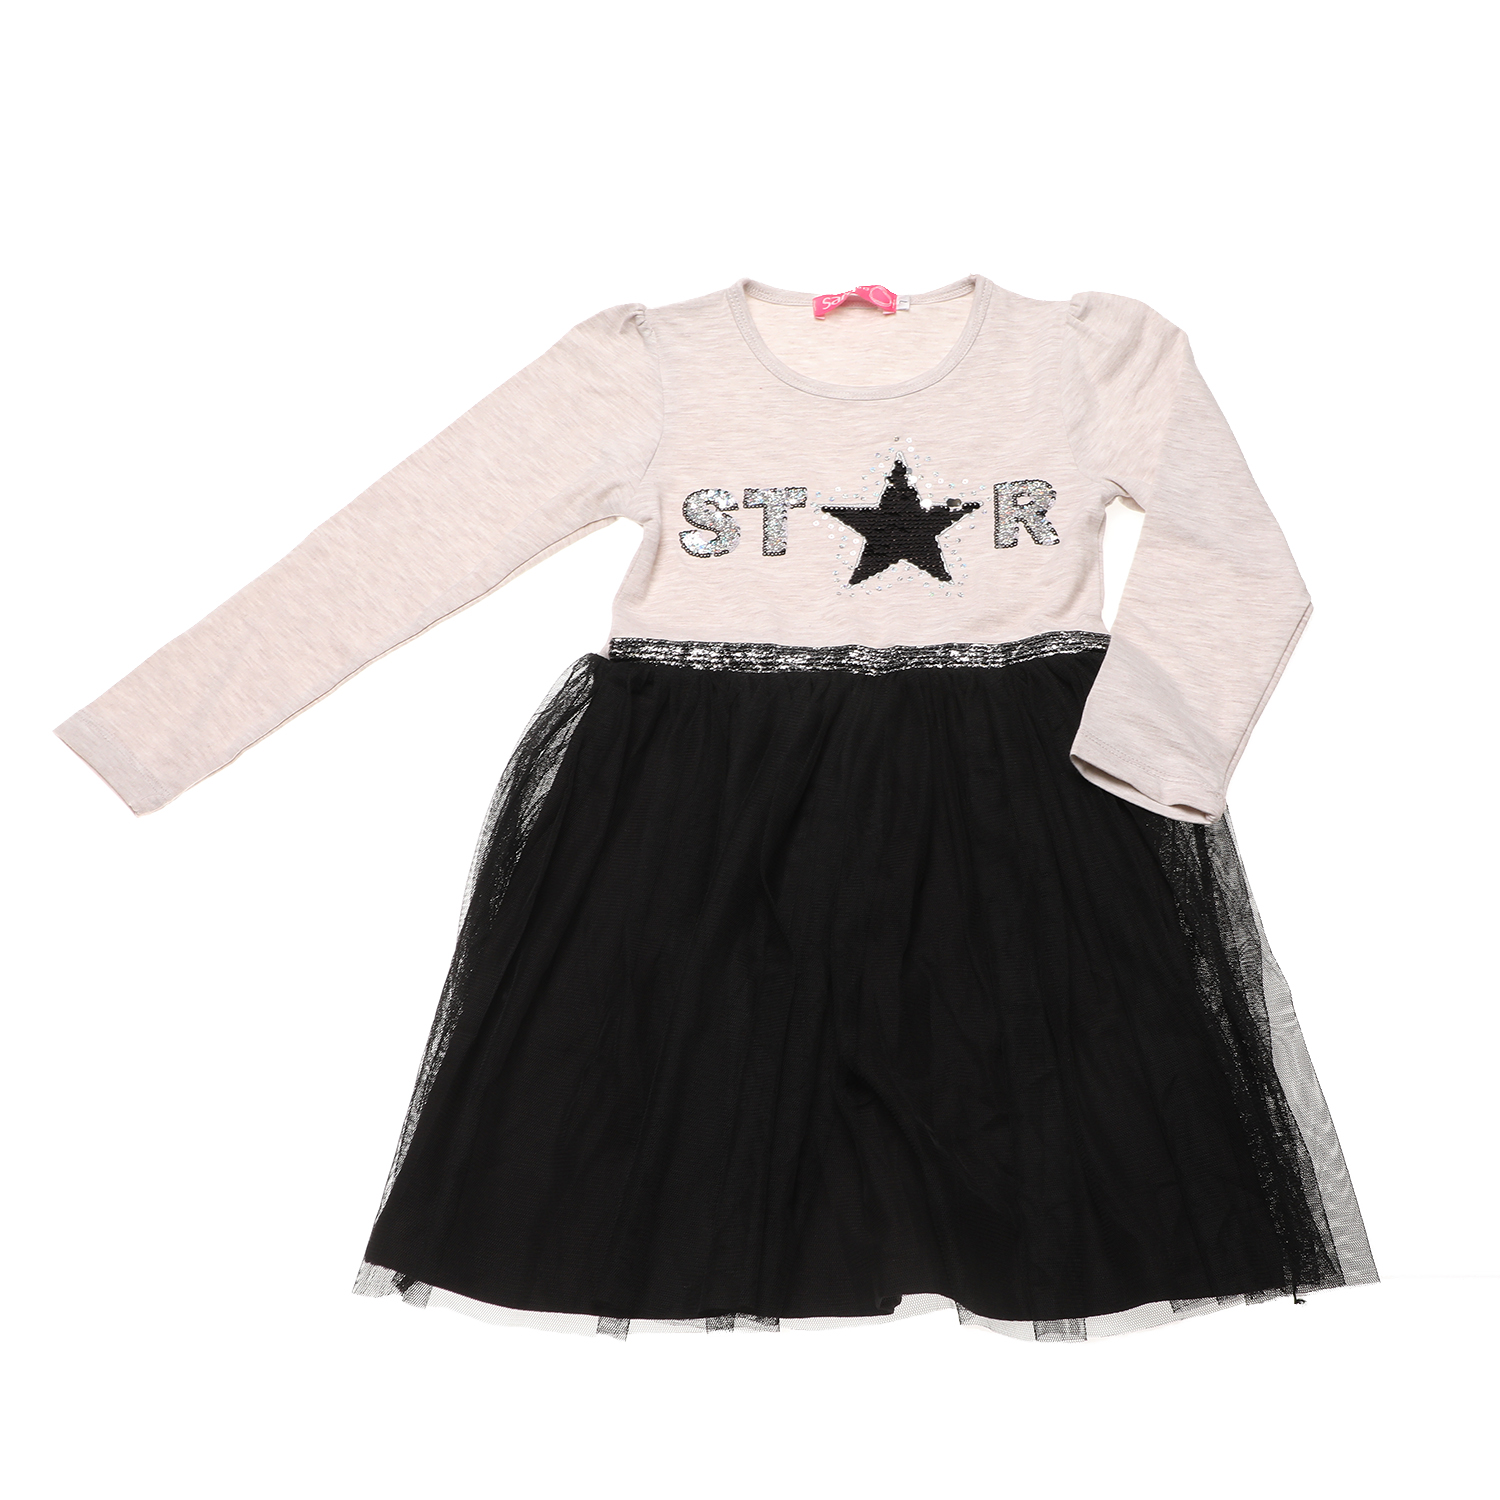 SAM 0-13 Παιδικό φόρεμα SAM 0-13 STAR μπεζ μαύρο